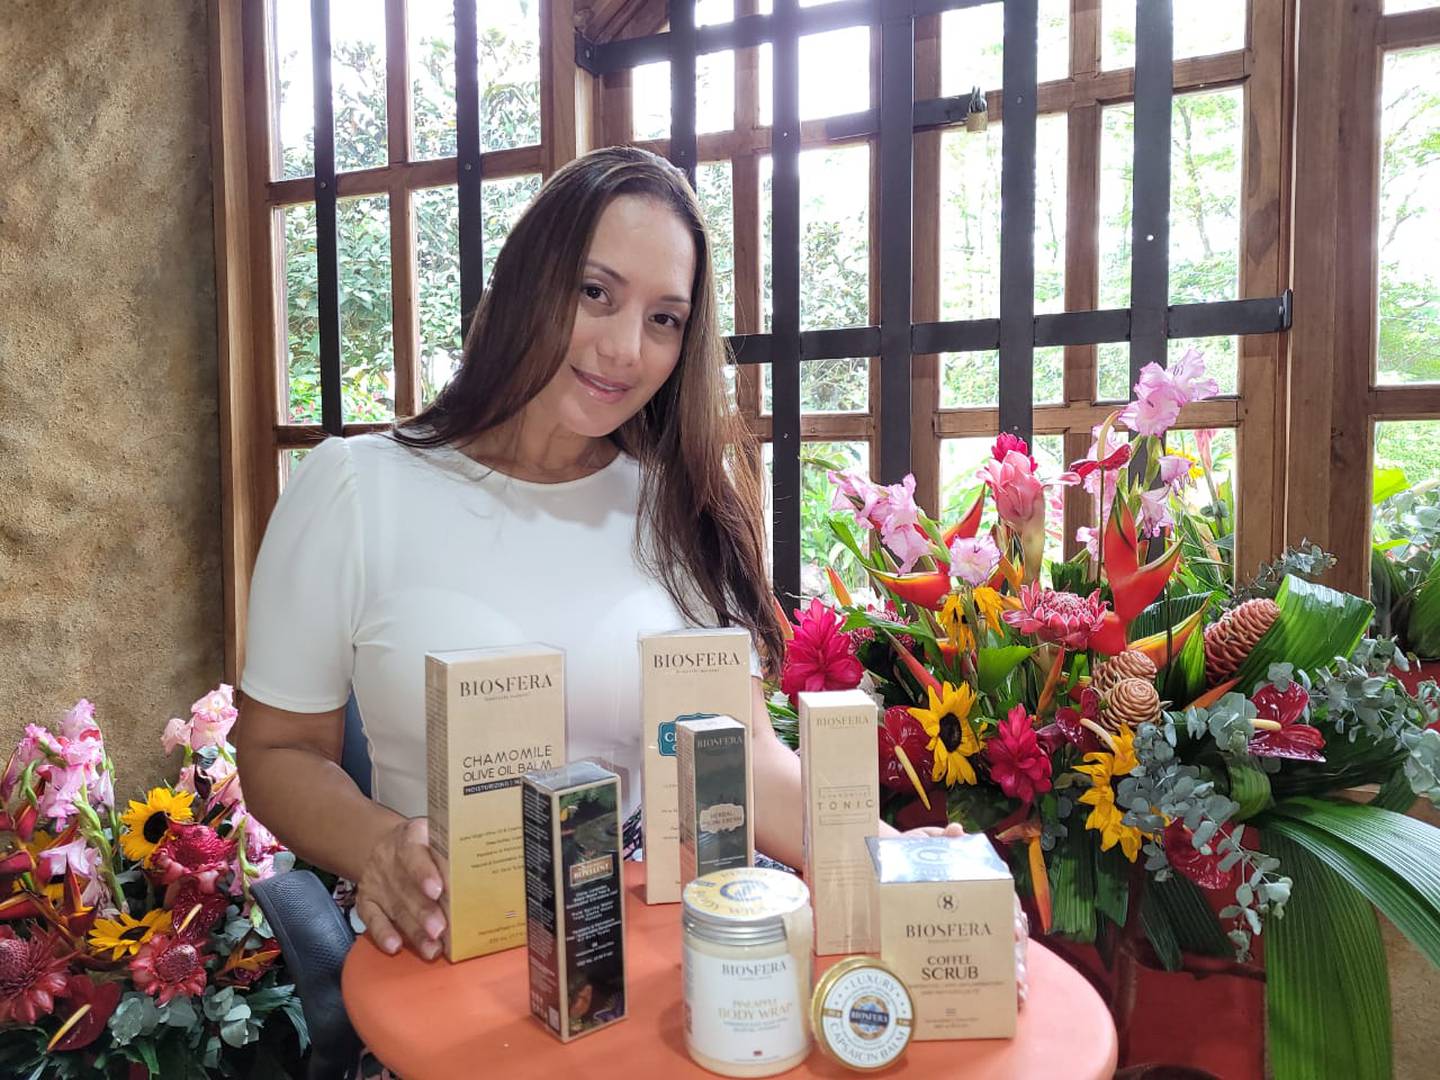 La emprendedora costarricense María Laura Quesada logró colocar sus productos de spa  Biosfera con éxito en la cadena hotelera Planet Hollywood Cancún